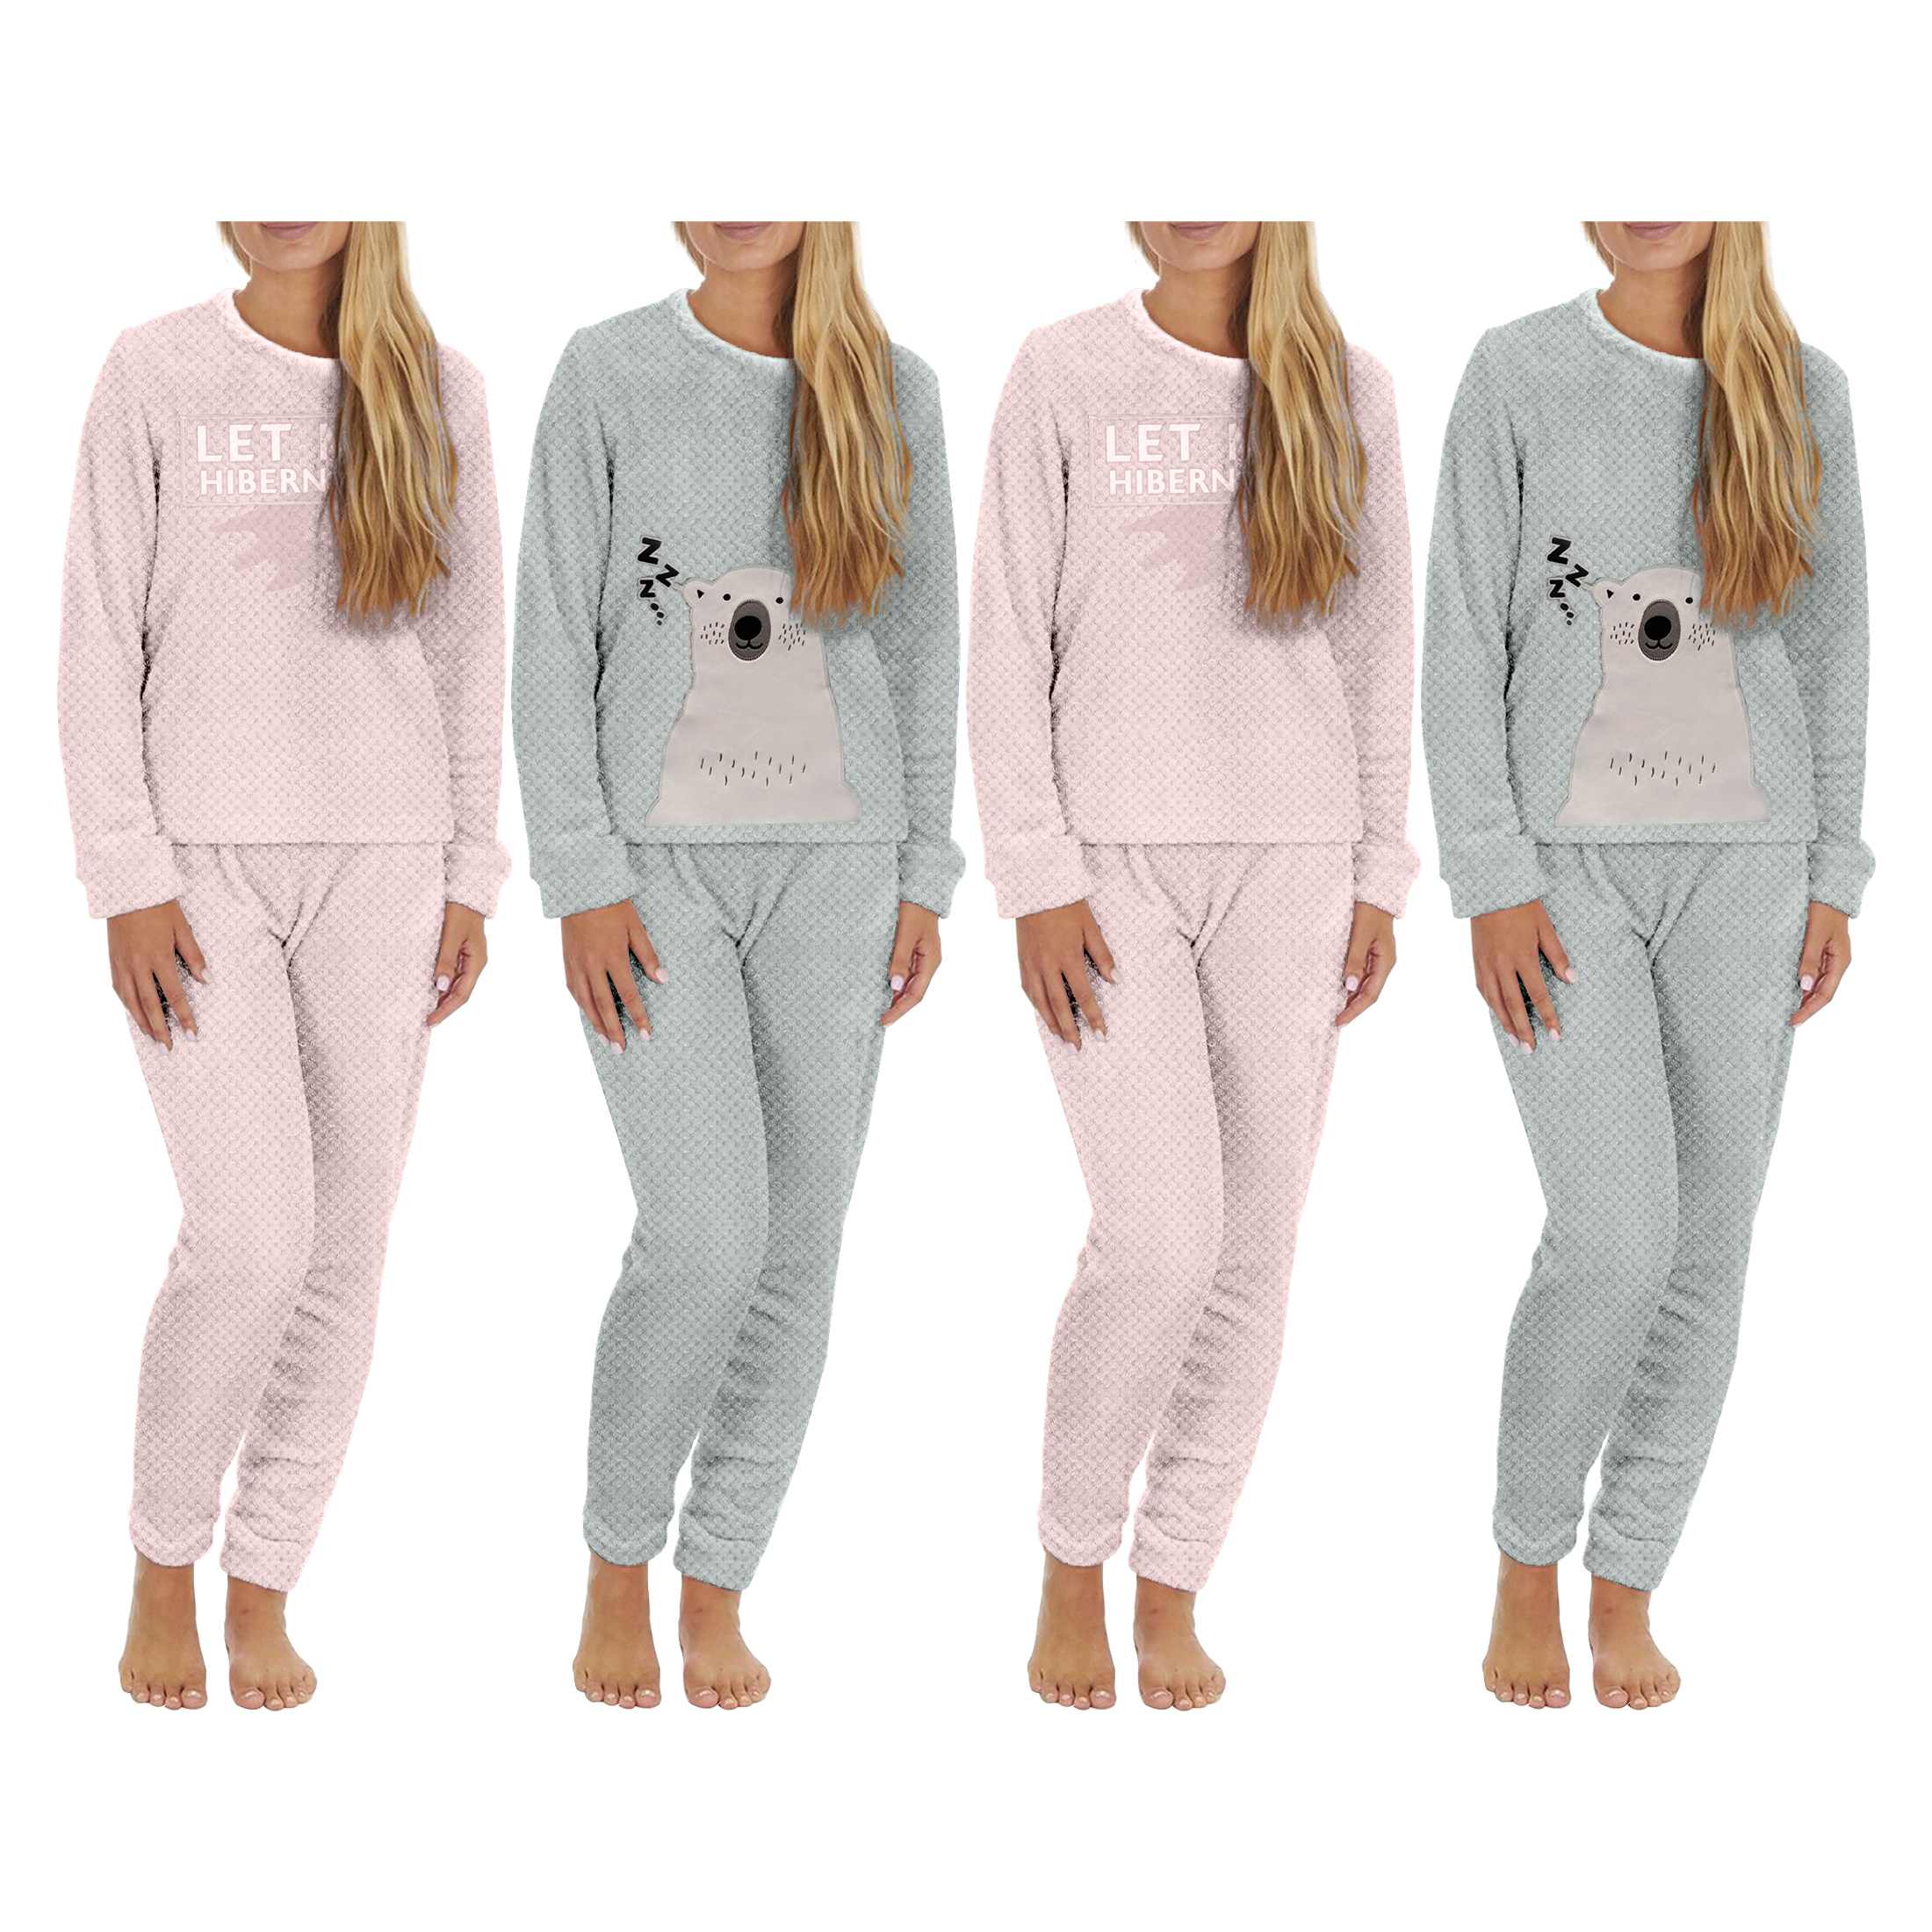 4-Piece: Plush Popcorn Knit Top And Jogger Pants Pajama Set - Blue & Pink, Medium